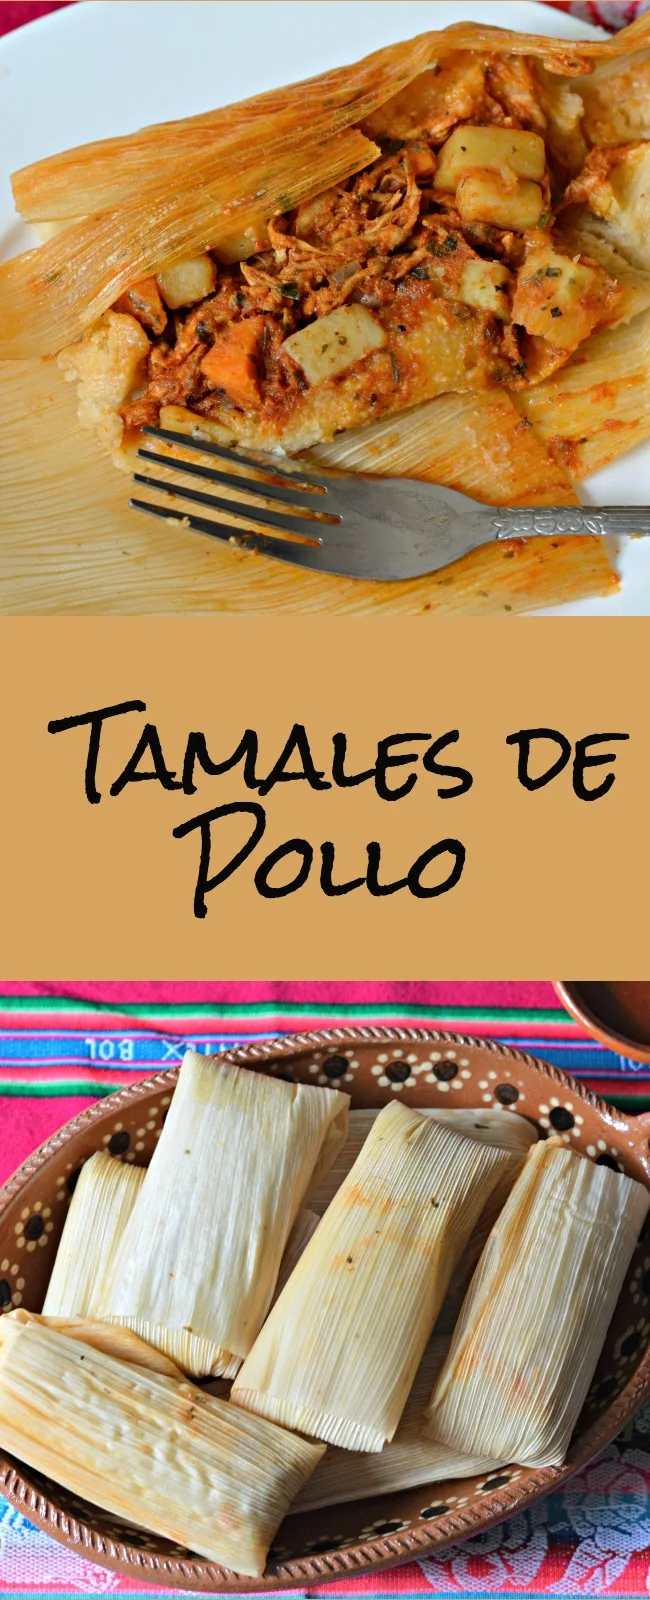 Si disfrutas de la autentica comida mexicana, definitivamente esta receta es para ti. Los tamales son deliciosos y todo un arte para cocinarlos! No dejes de probarlos porque te encantaran!